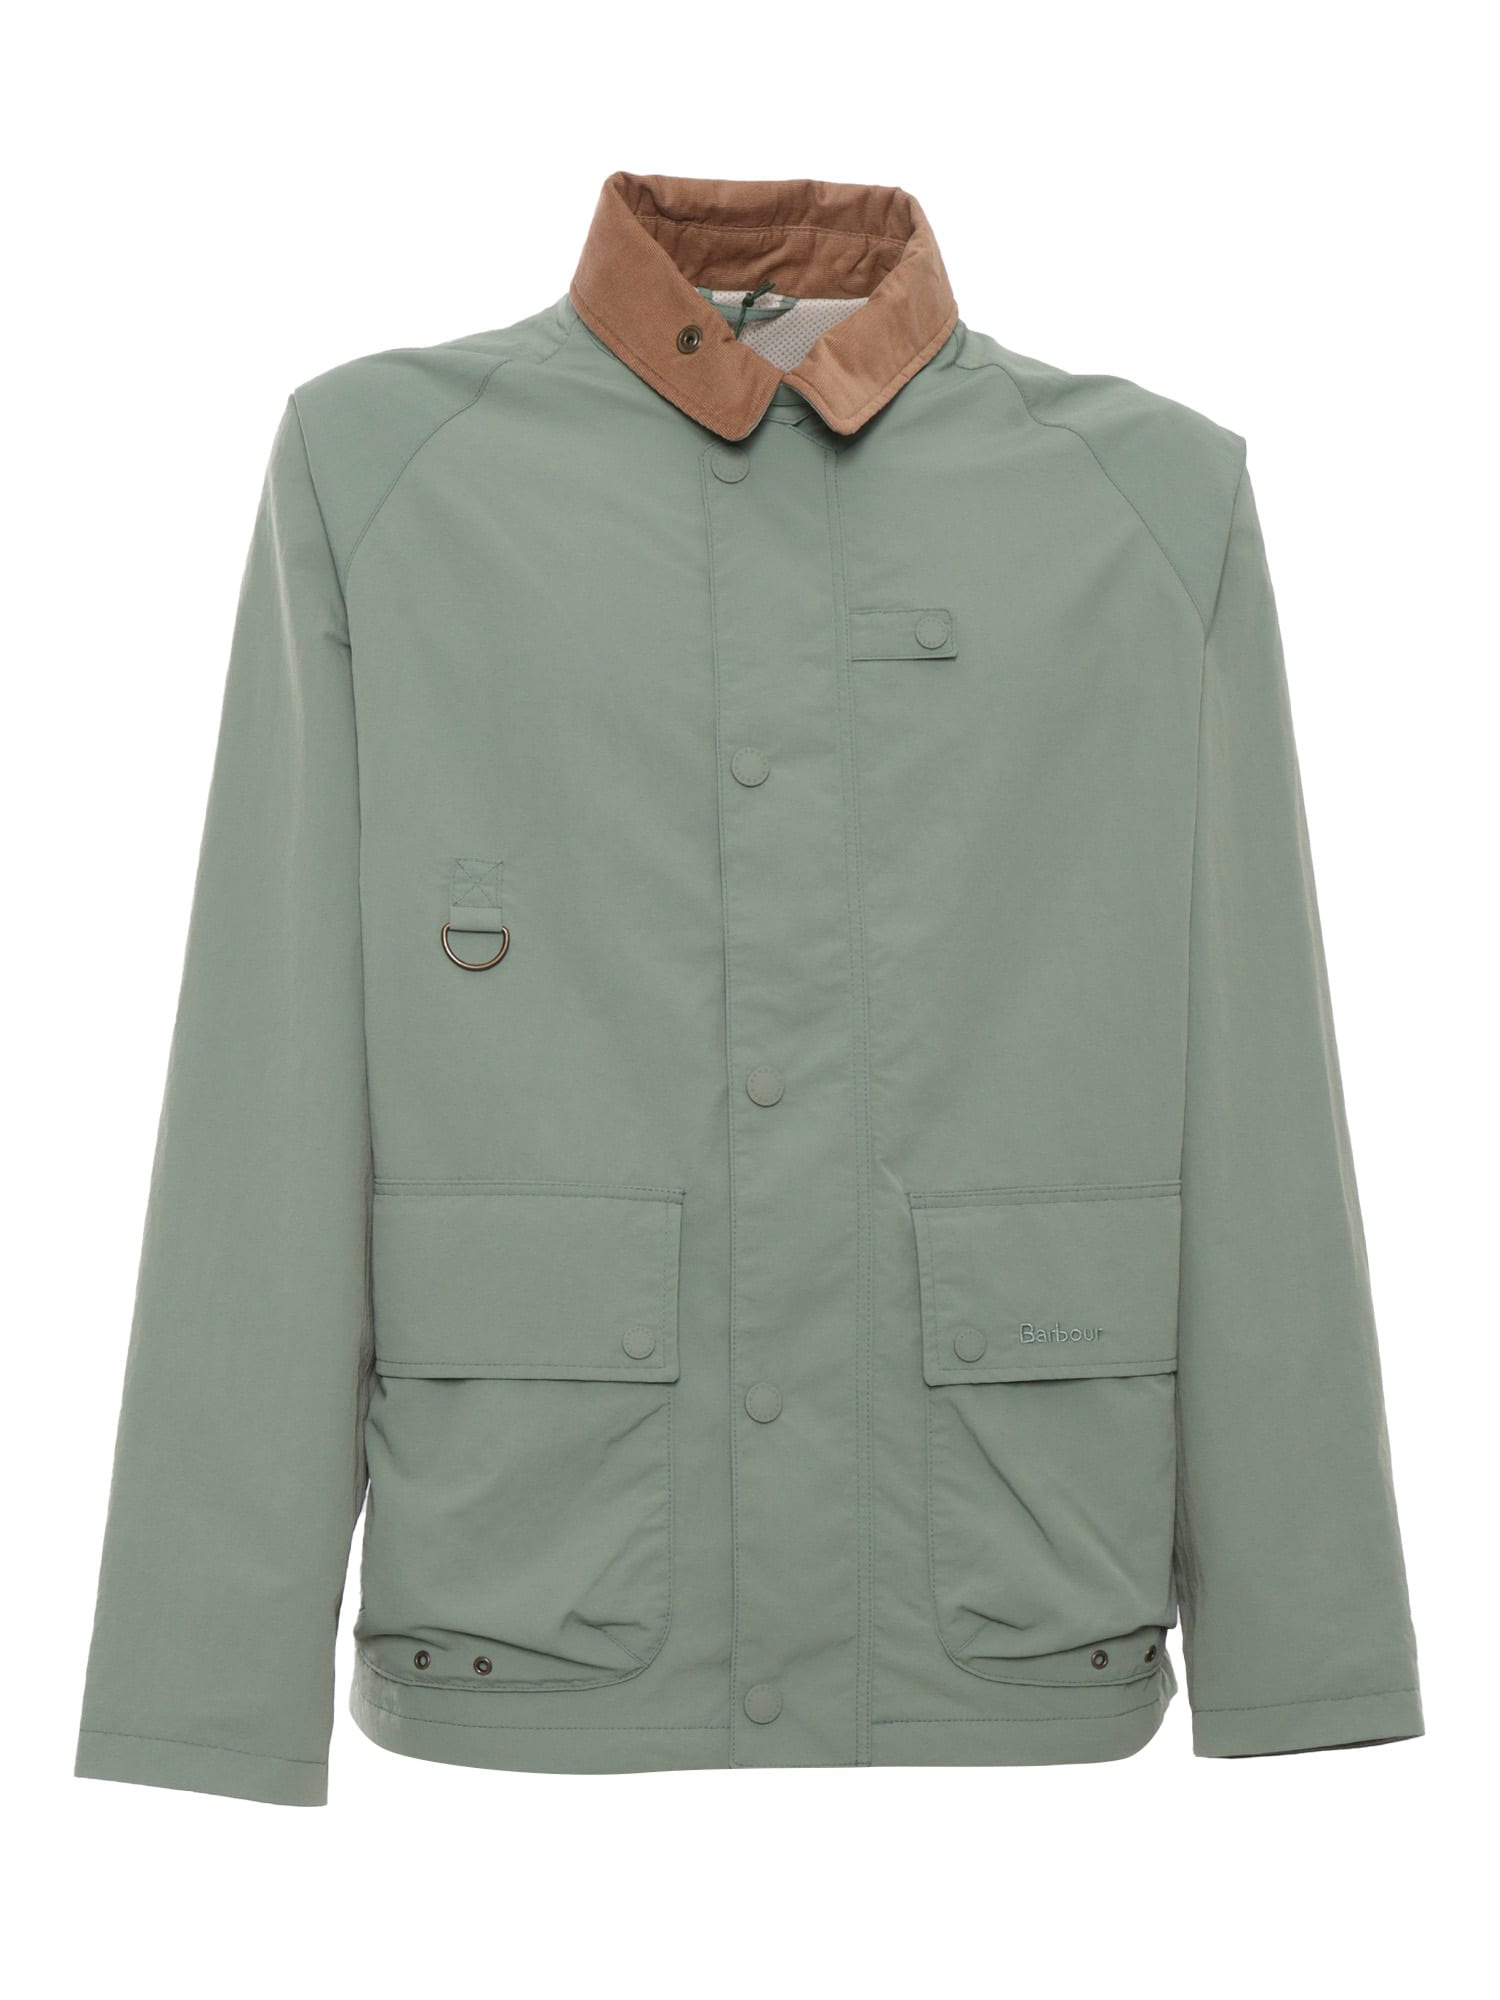 Barbour Sage Green Jacket